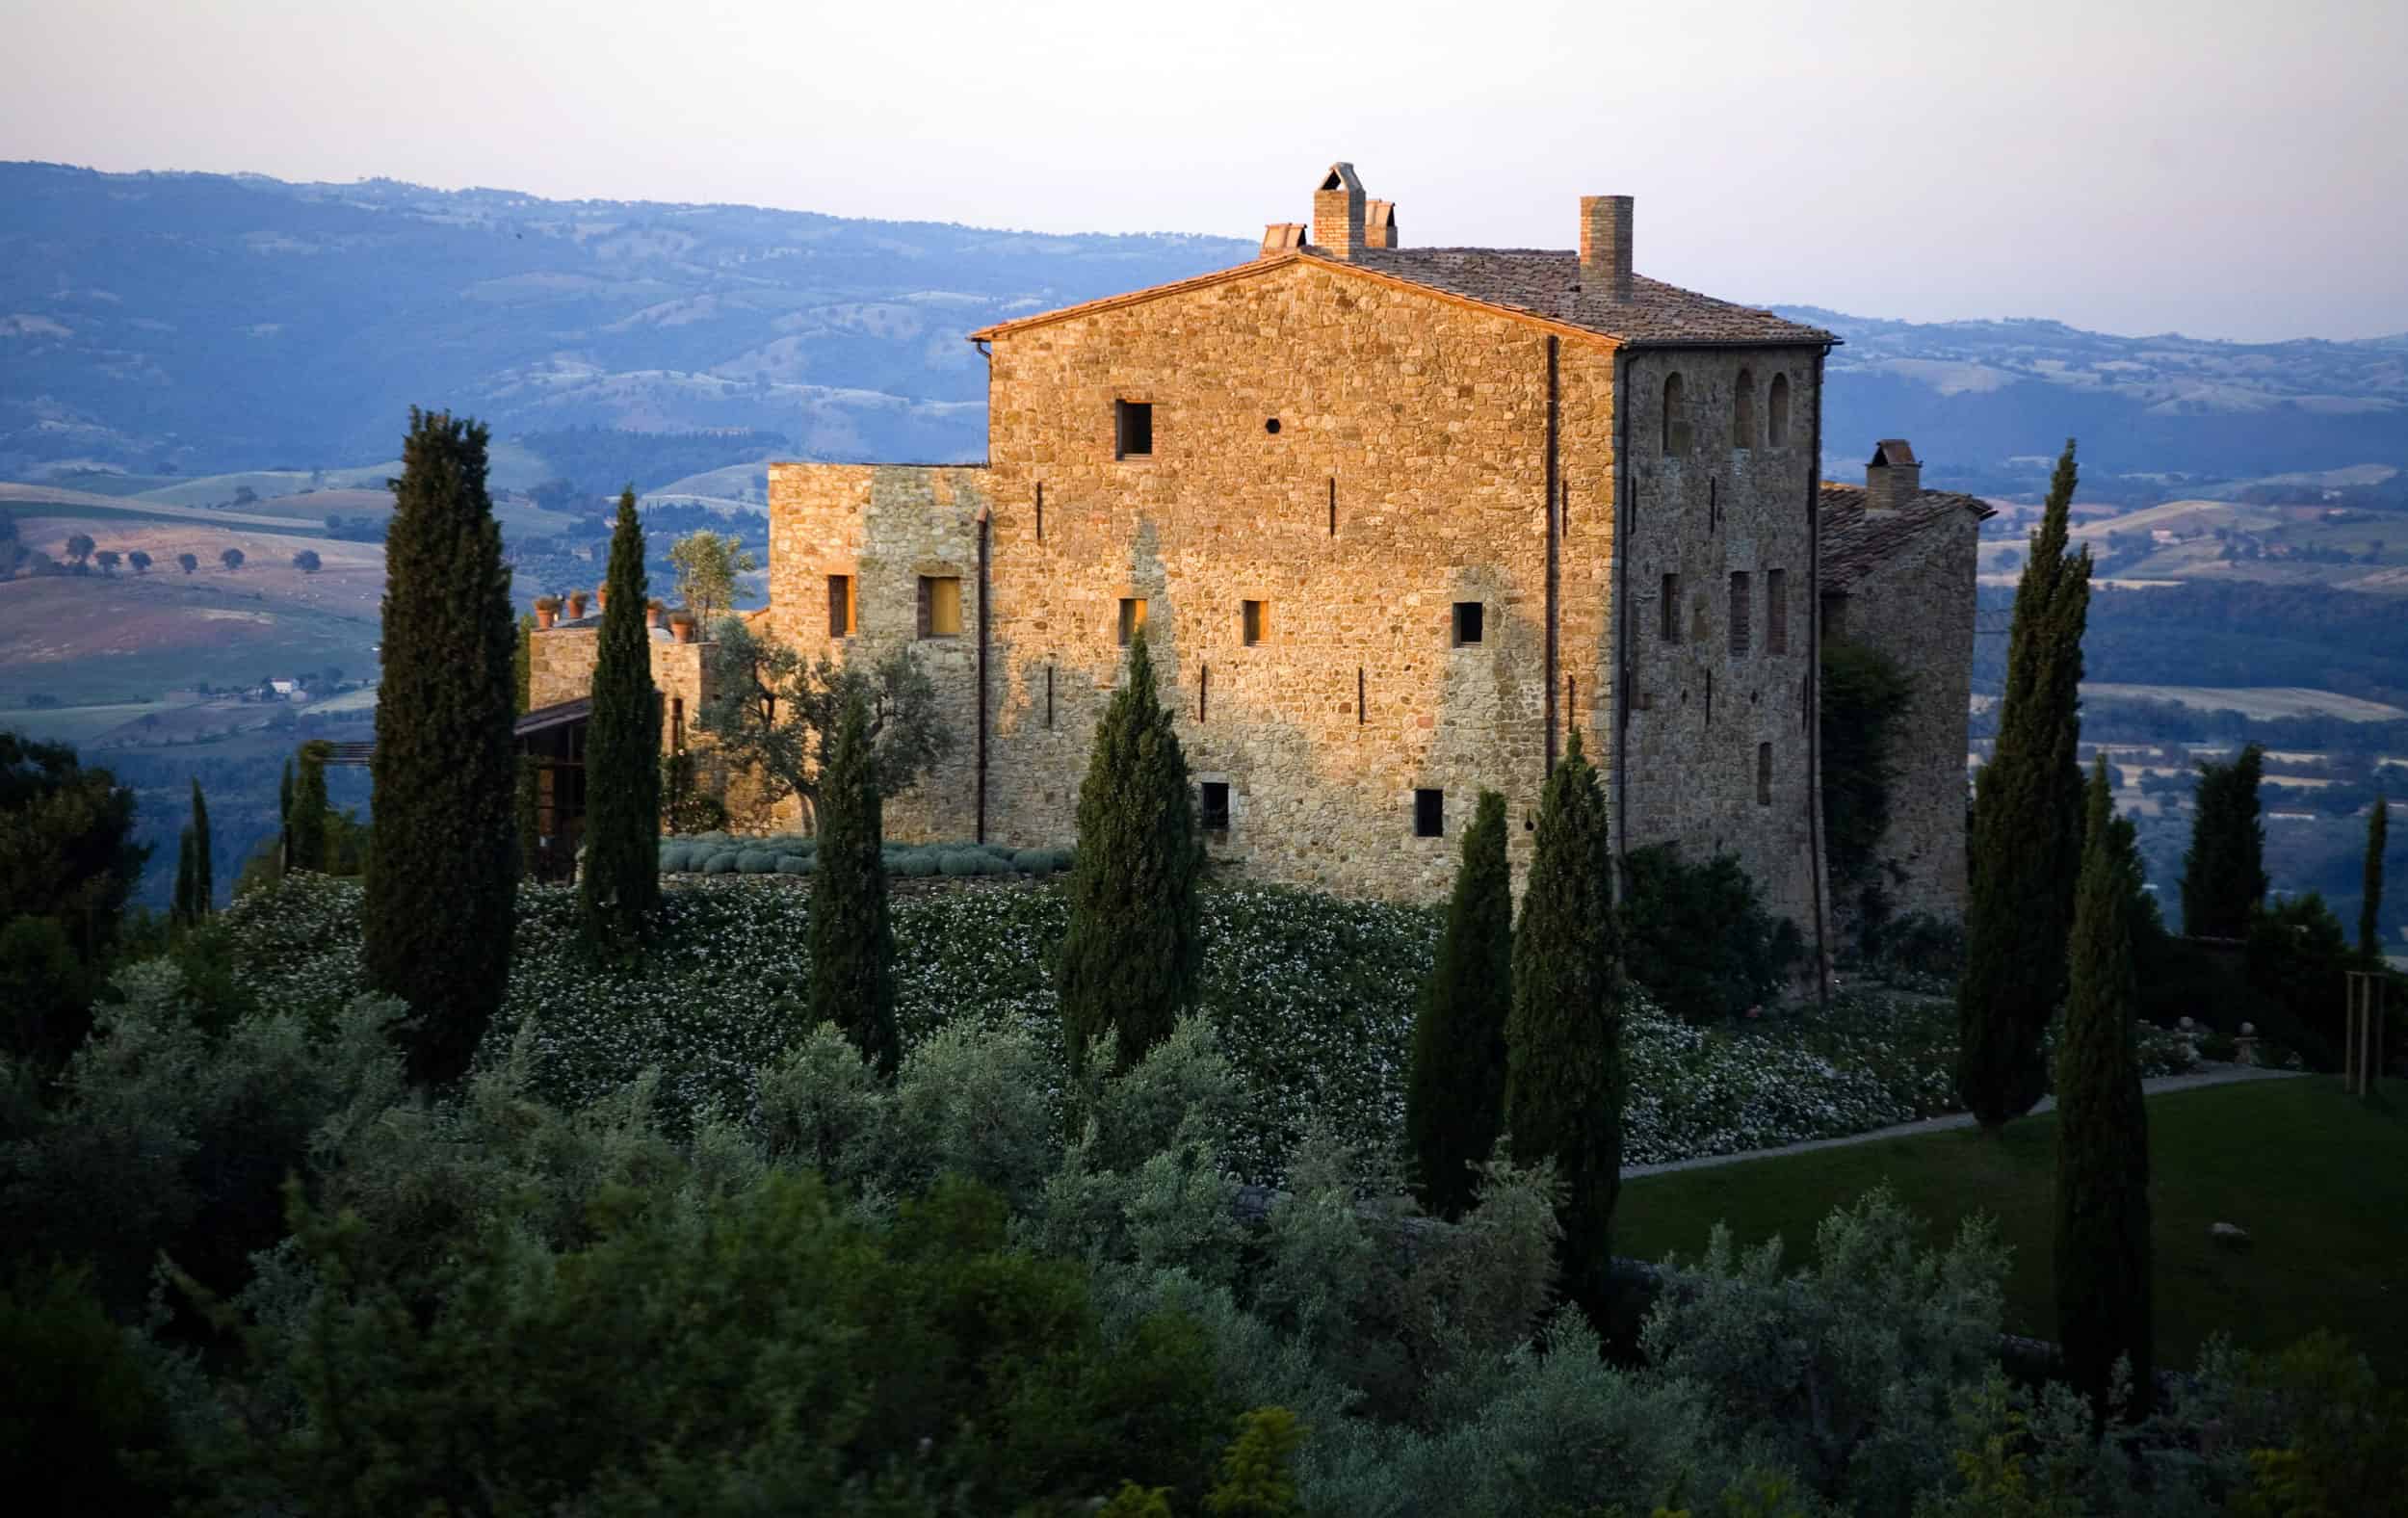 castello di vicarello, a boutique hotel in Tuscany, photographed at dawn.